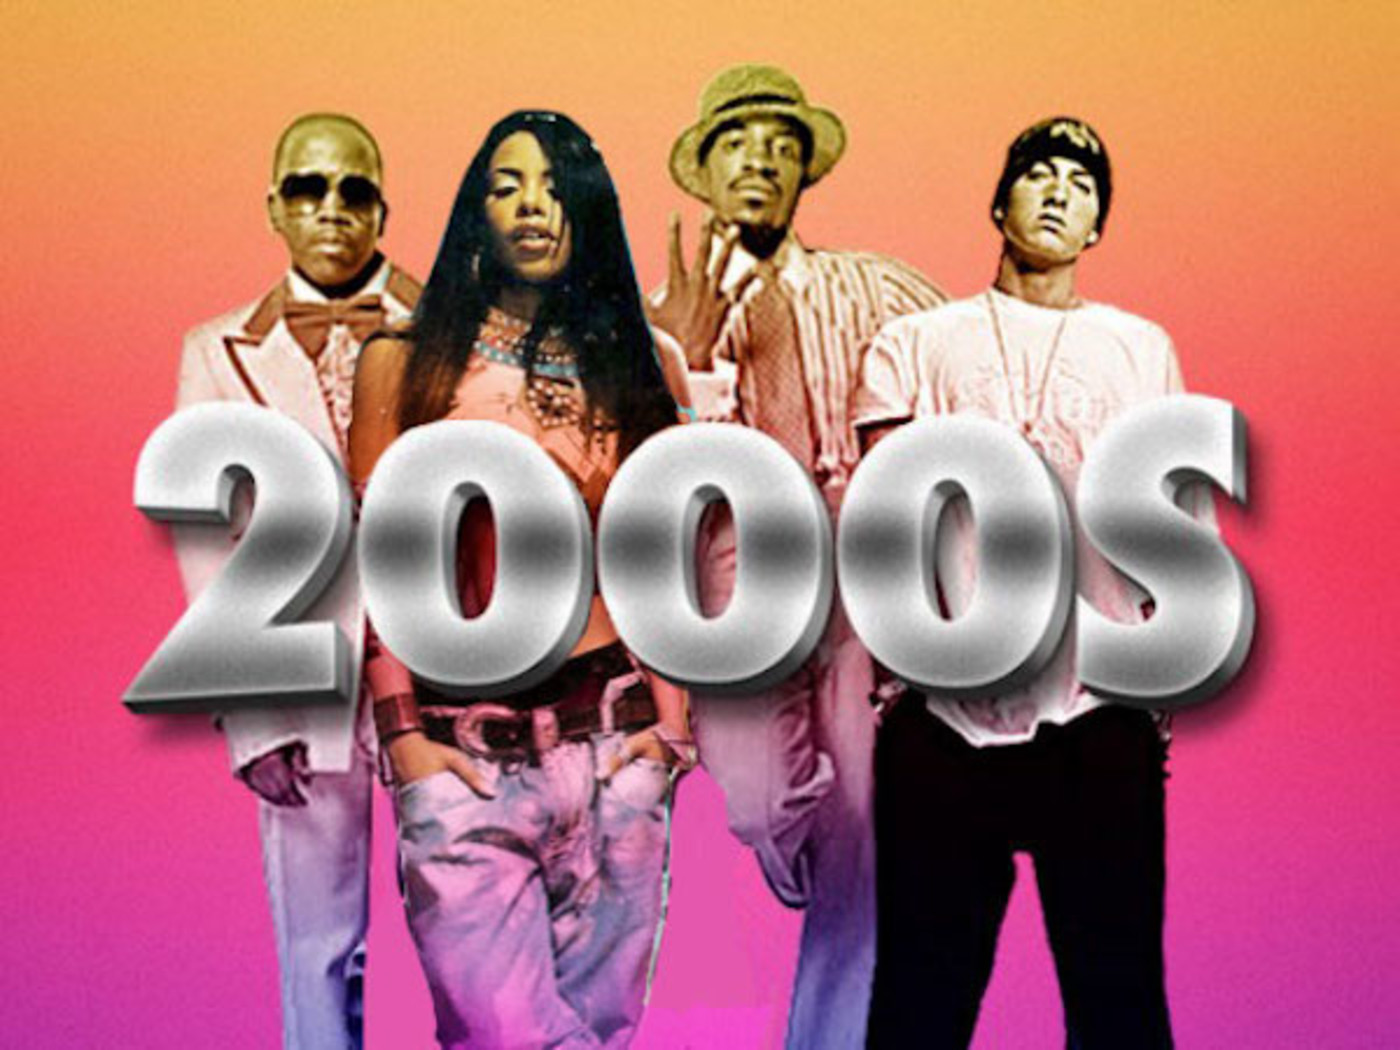 Песня про 2000 год. S2000. 2000s Music. 2000s years. Pop Music 2000s.